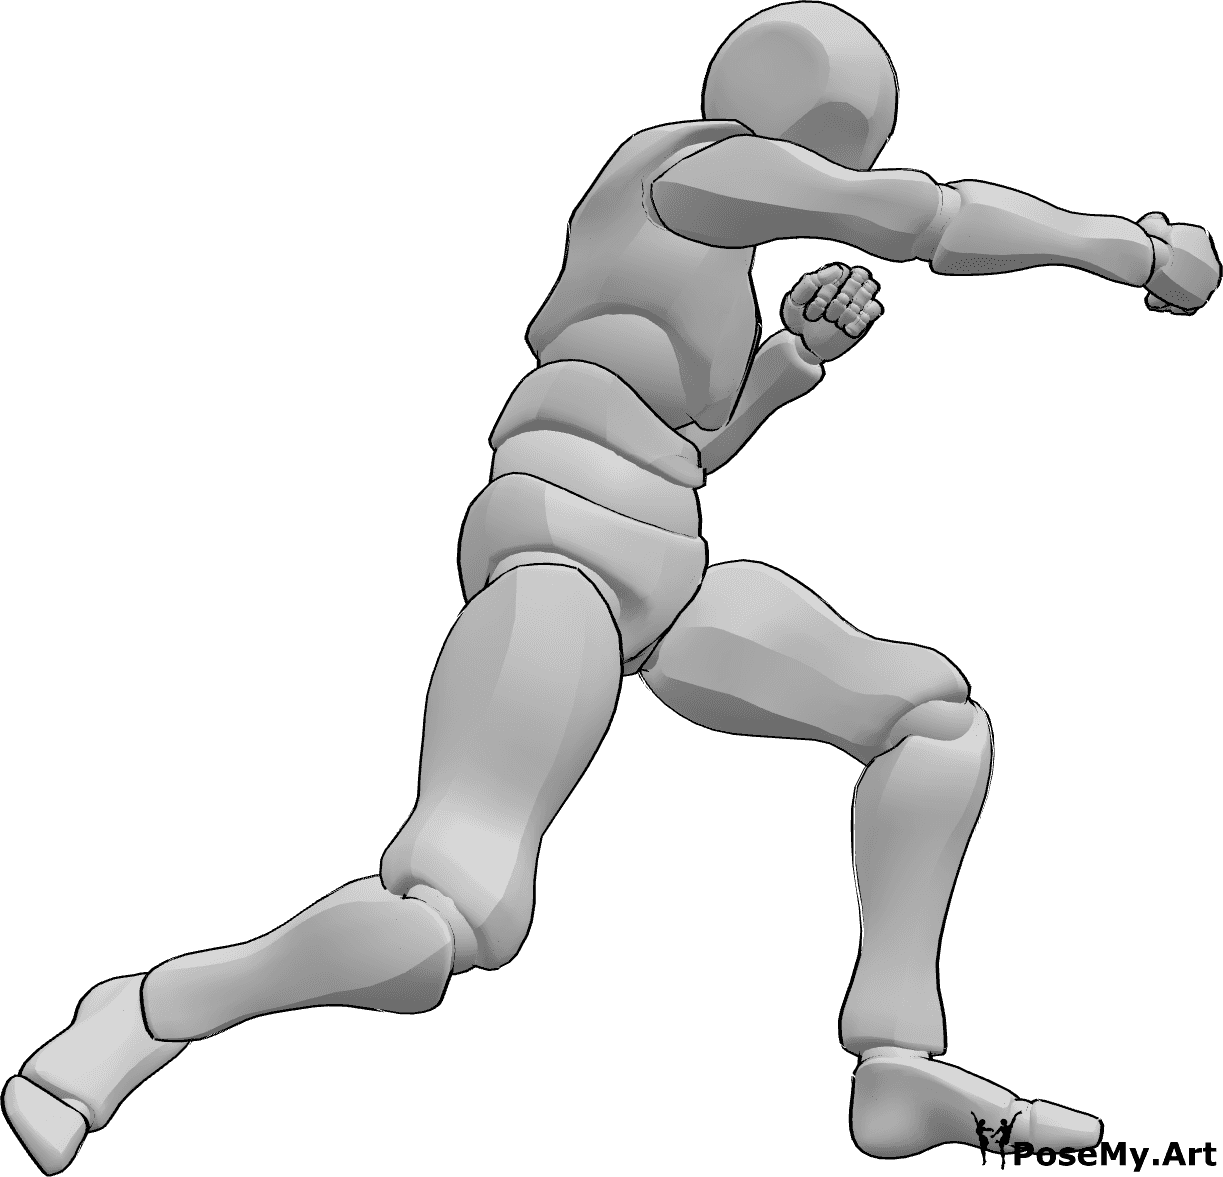 Référence des poses- Homme en train de frapper des coups de boxe - L'homme se tient en position de boxe et frappe avec sa main droite.